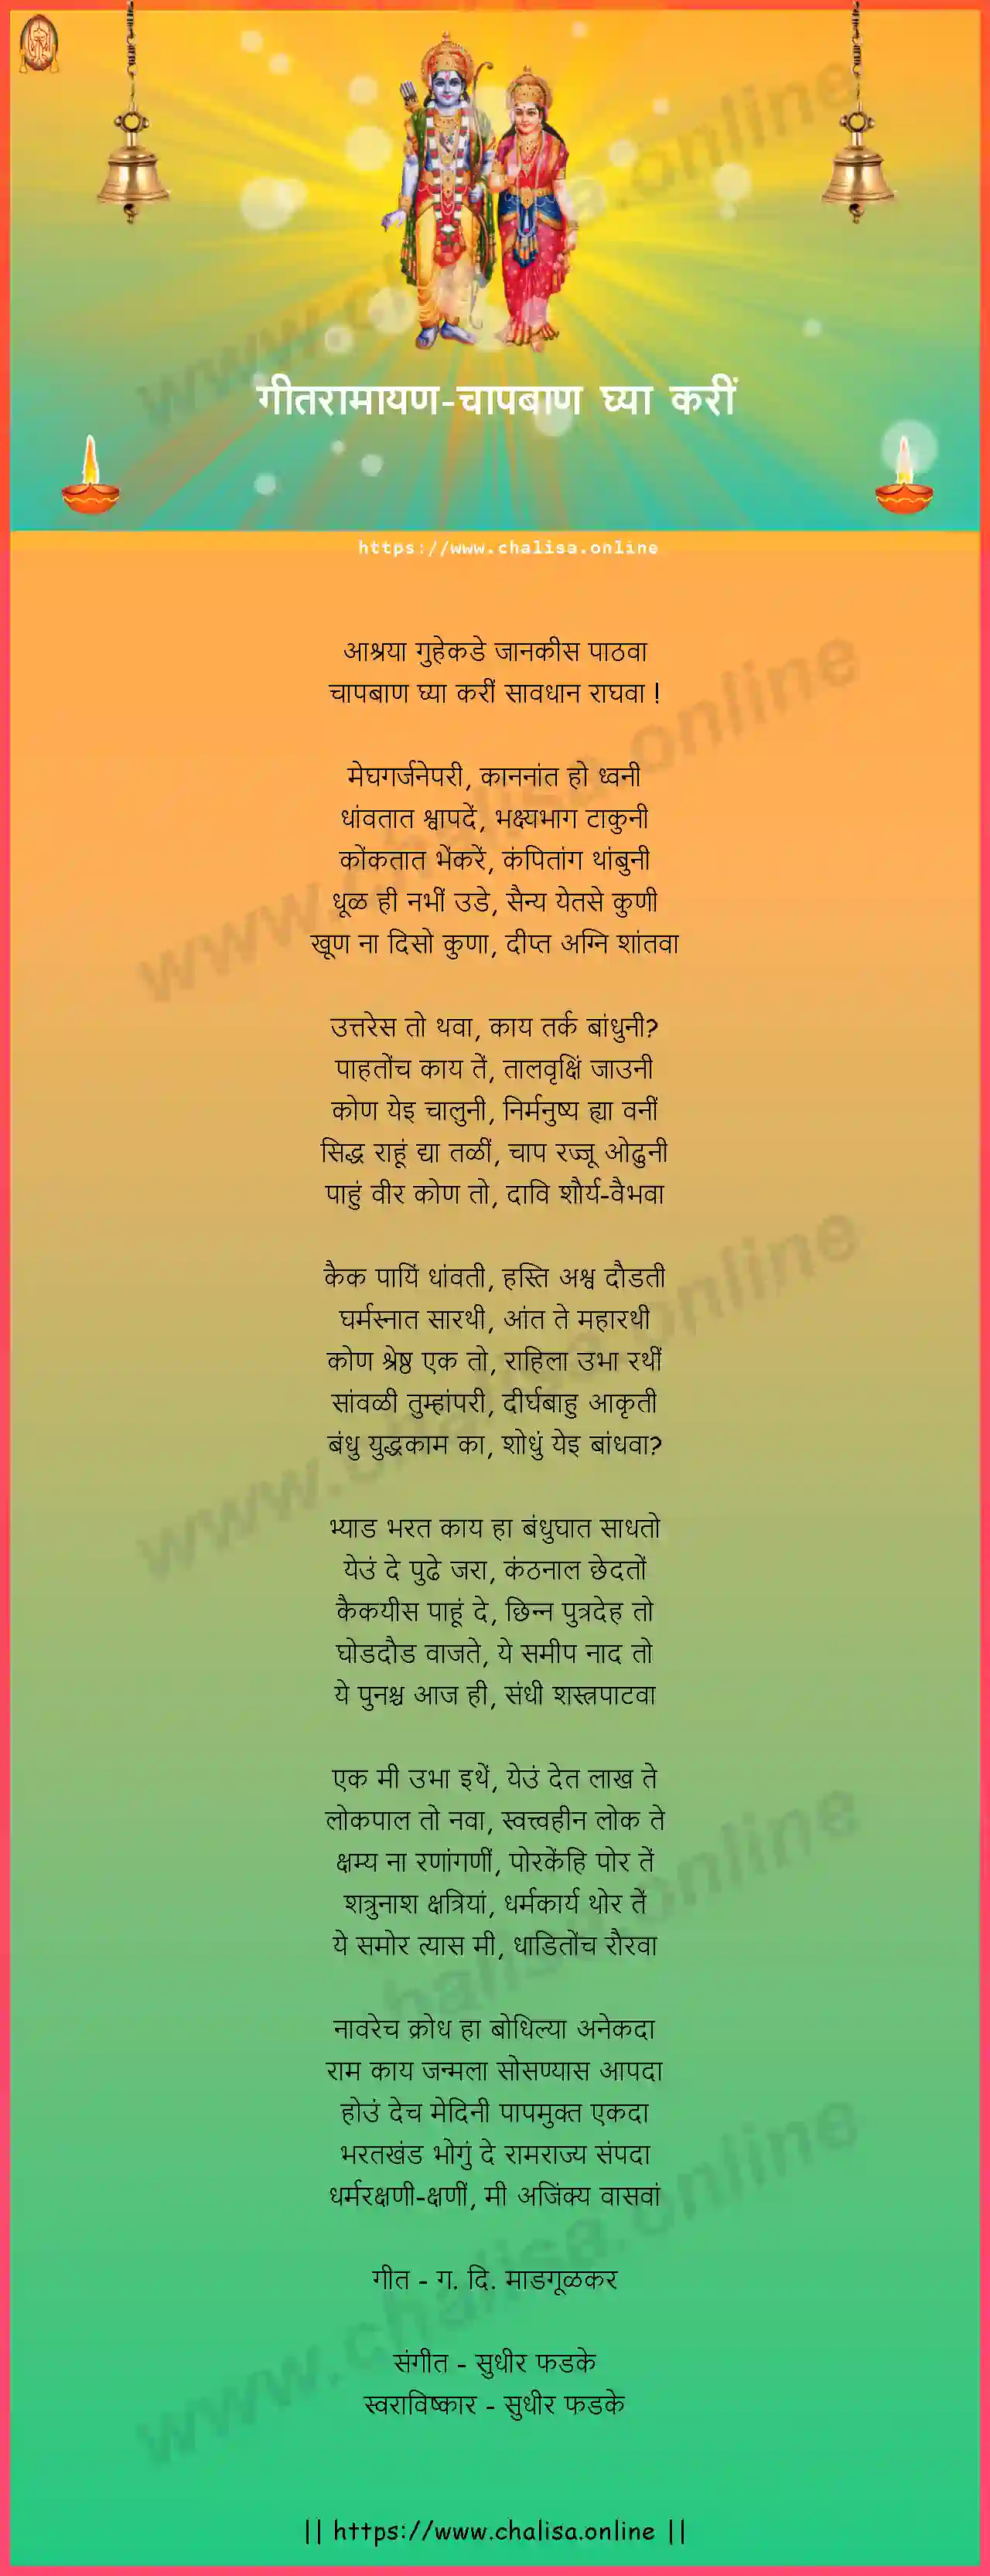 chap-baan-ghya-kari-geet-ramayan-marathi-lyrics-download